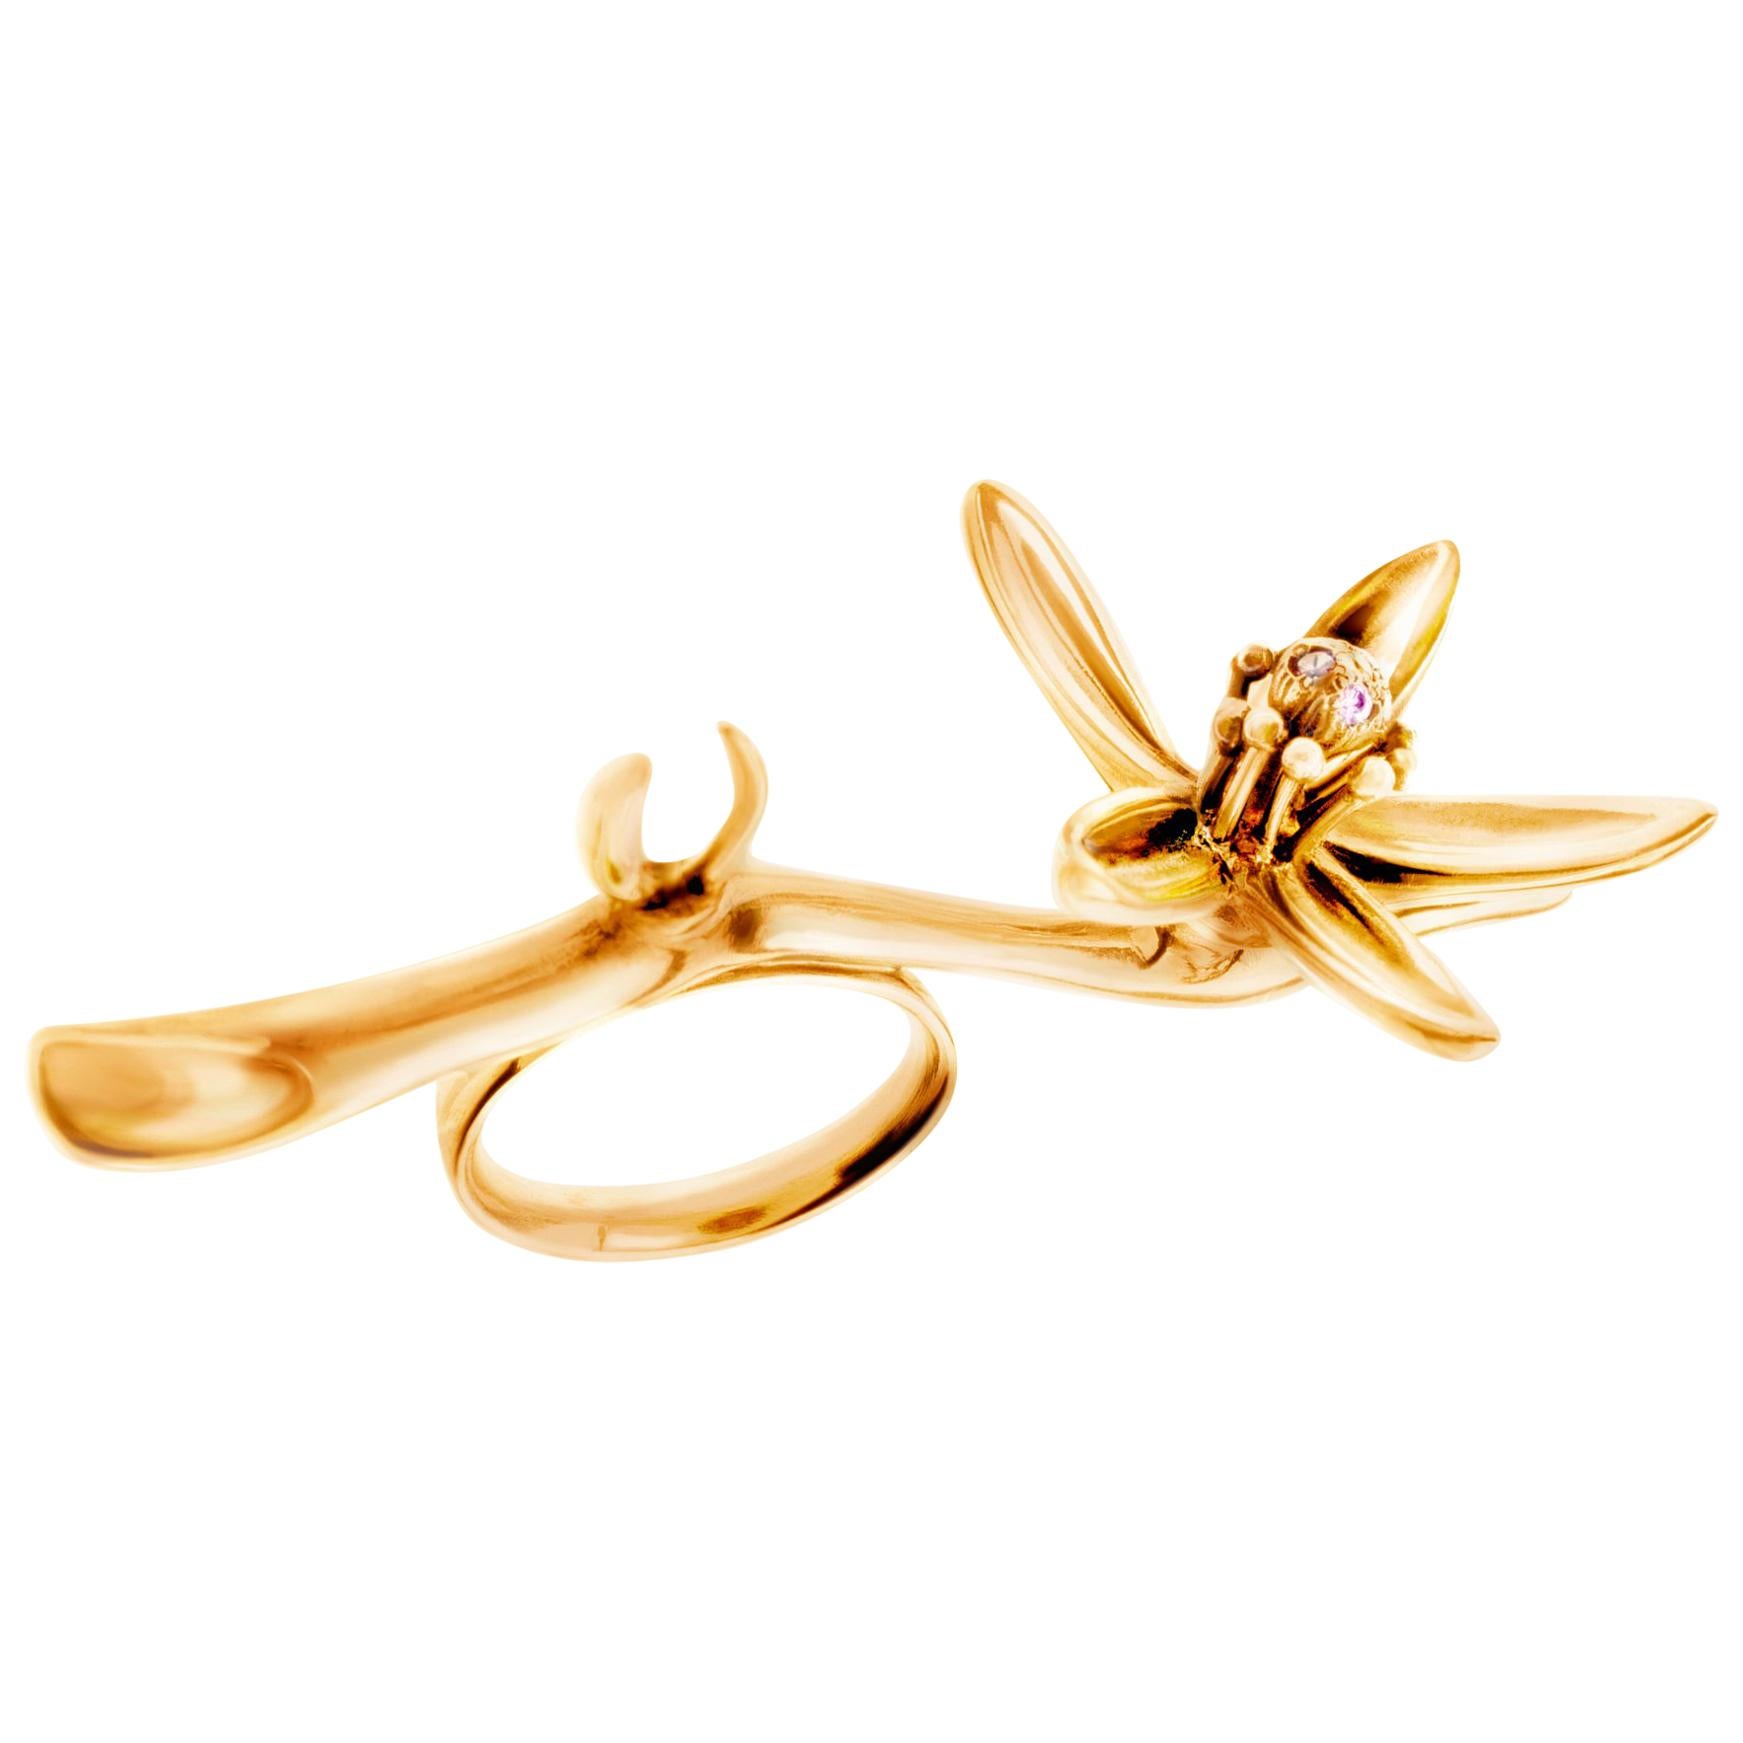 18 Karat Gold Artist Orange Flower Fashion Cocktail Ring Featured in Vogue